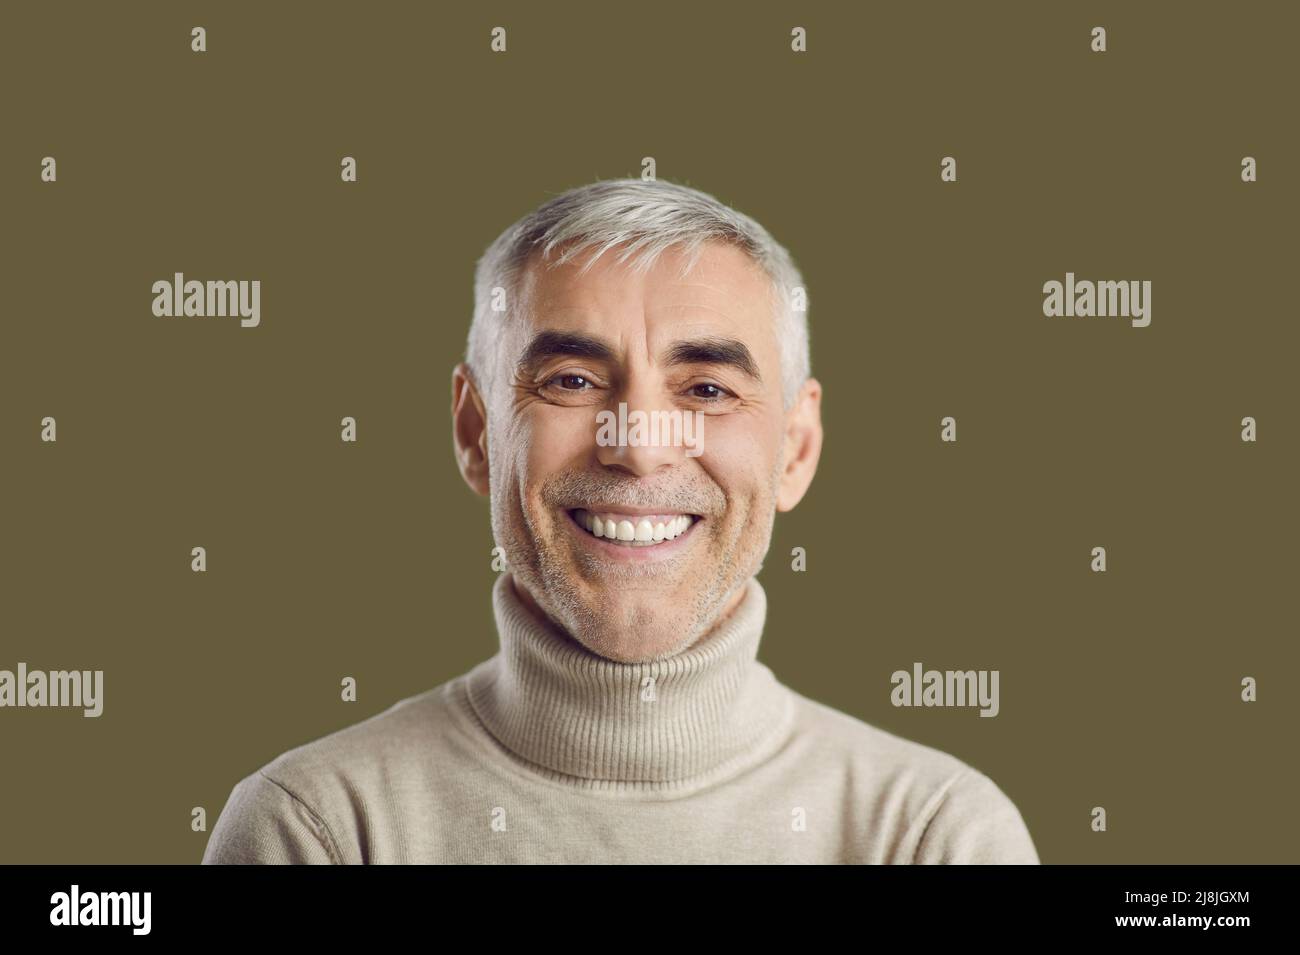 Primo piano ritratto di felice uomo dai capelli bianchi con un sorriso sincero e un'espressione amichevole. Foto Stock